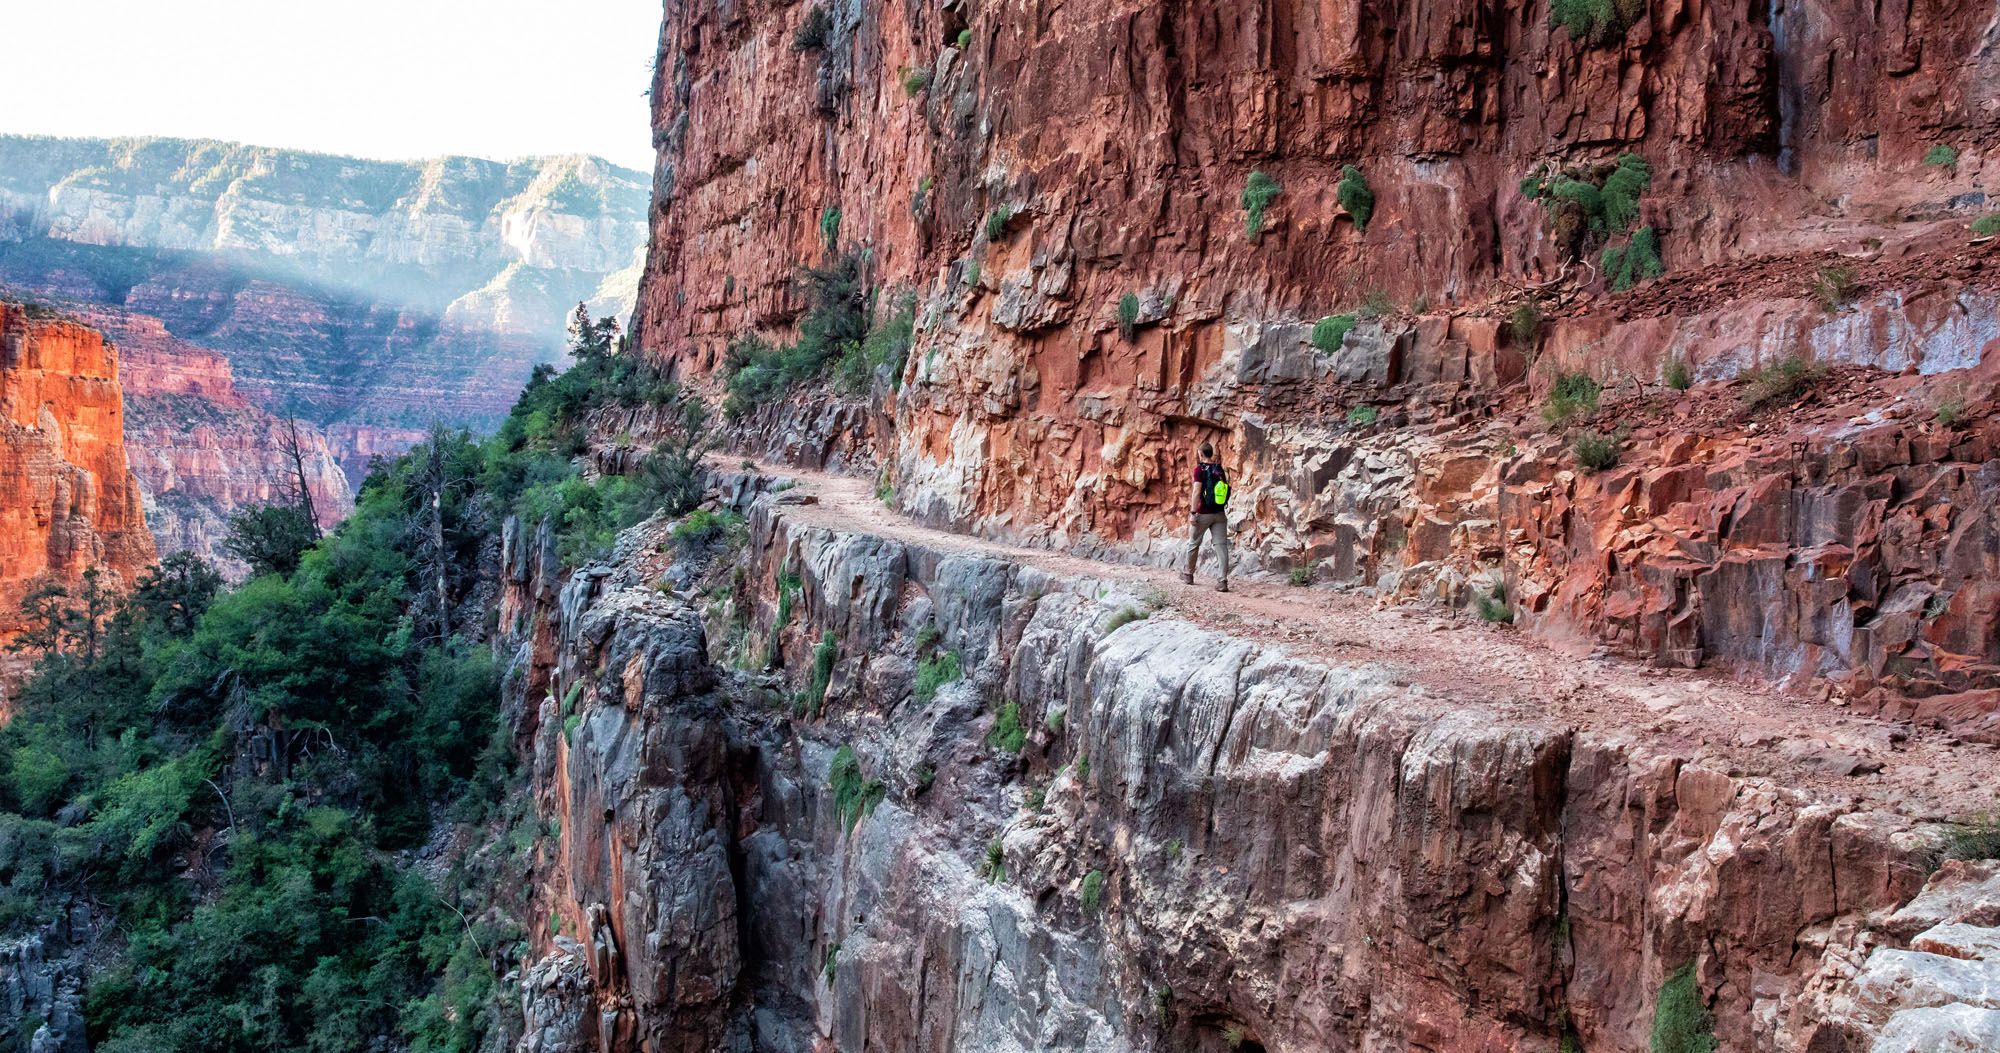 Grand Canyon Rim-To-Rim Hike, Arizona